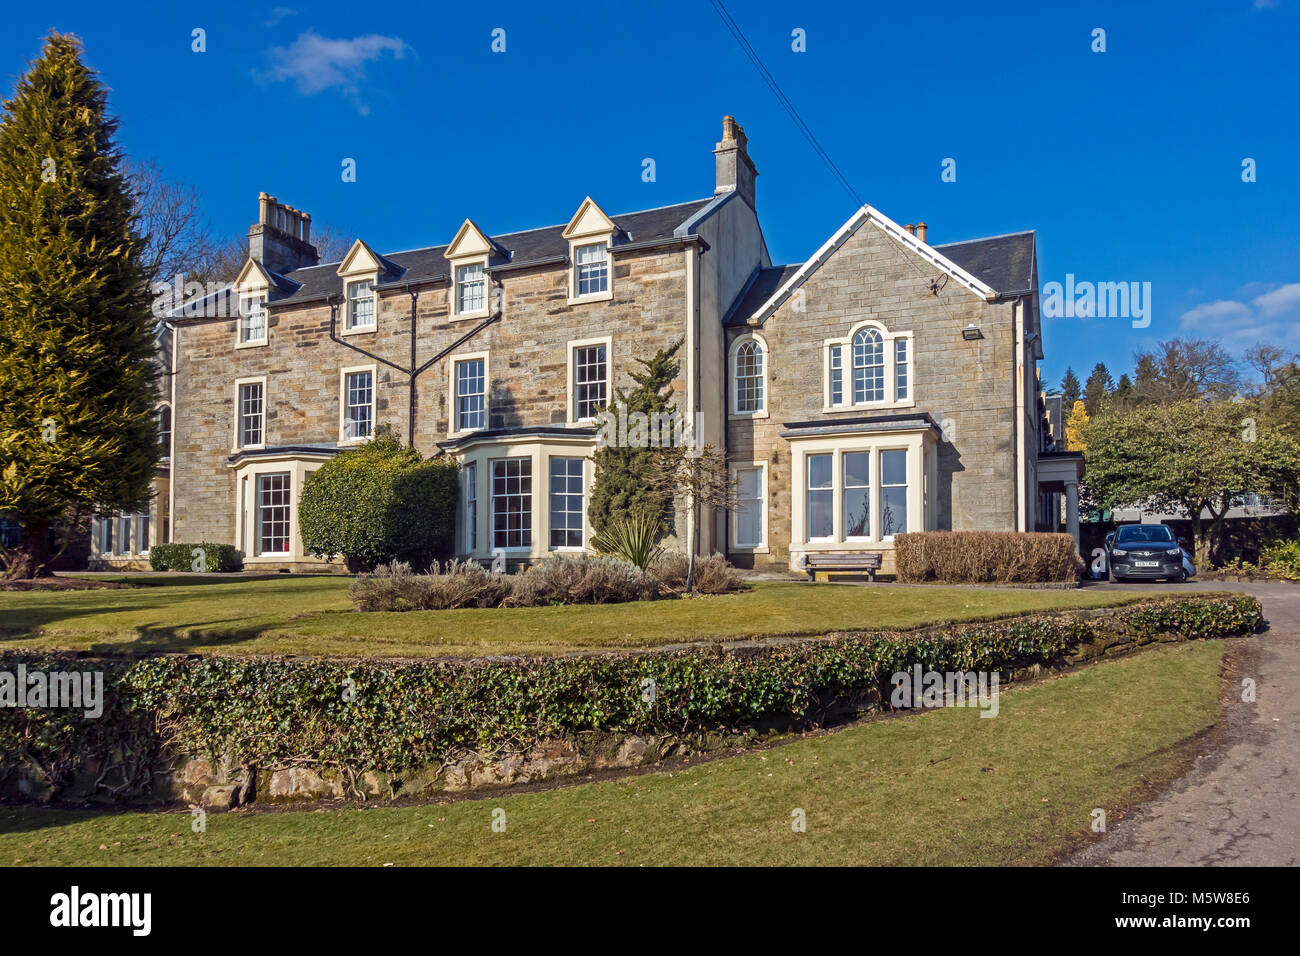 Colzium Estate & Visitor Center in der Nähe von Kilsyth in North Lanarkshire, Schottland Großbritannien Colzeum Haus Stockfoto